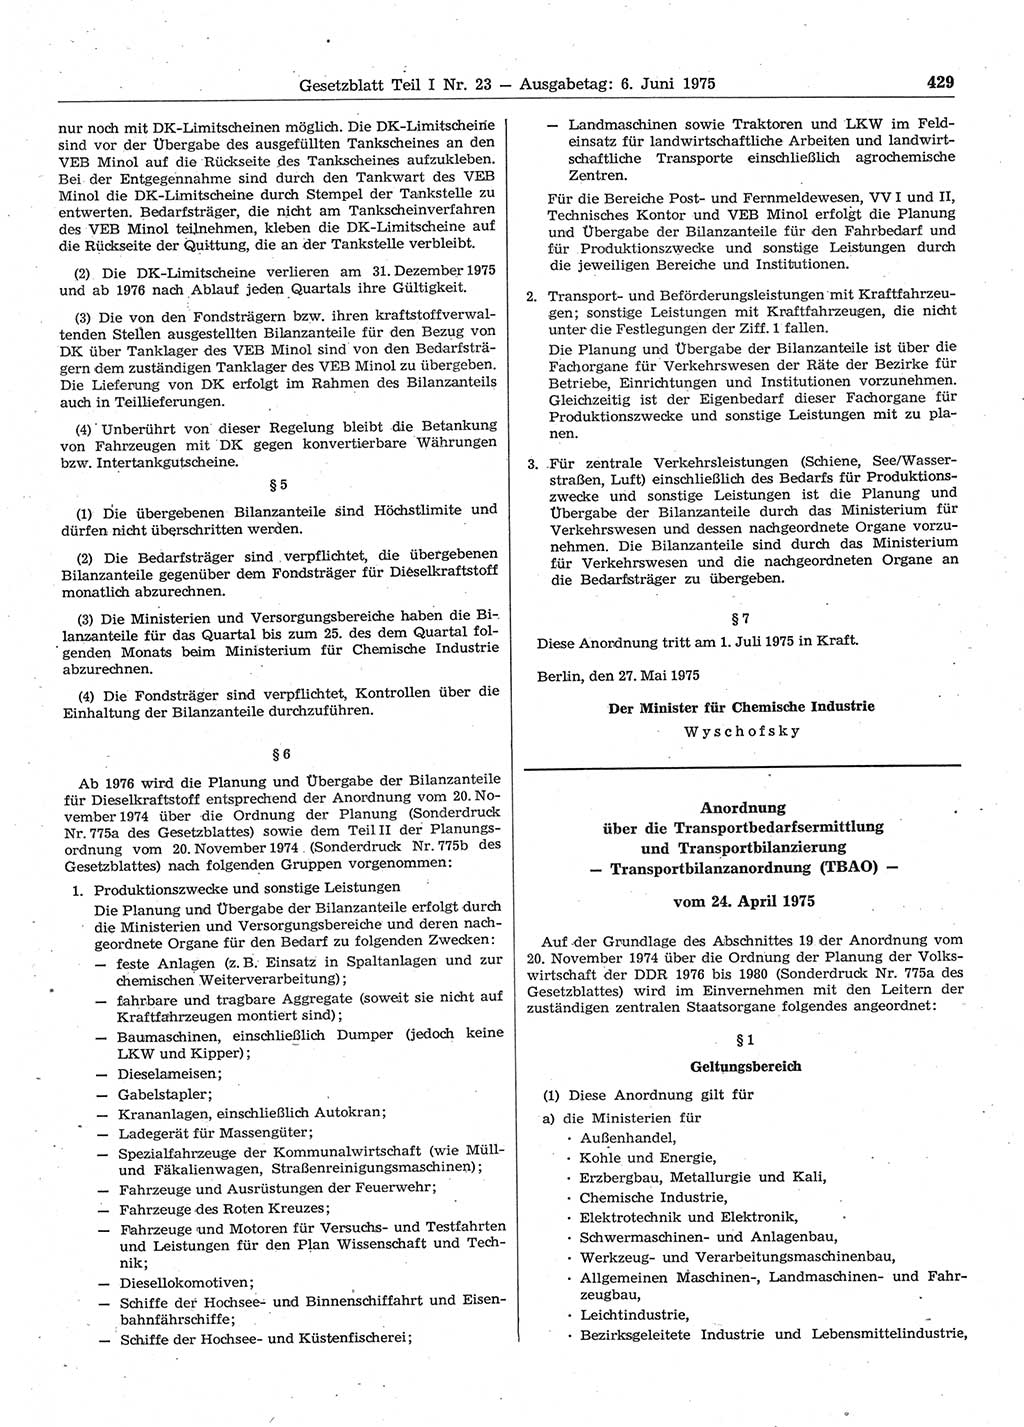 Gesetzblatt (GBl.) der Deutschen Demokratischen Republik (DDR) Teil Ⅰ 1975, Seite 429 (GBl. DDR Ⅰ 1975, S. 429)